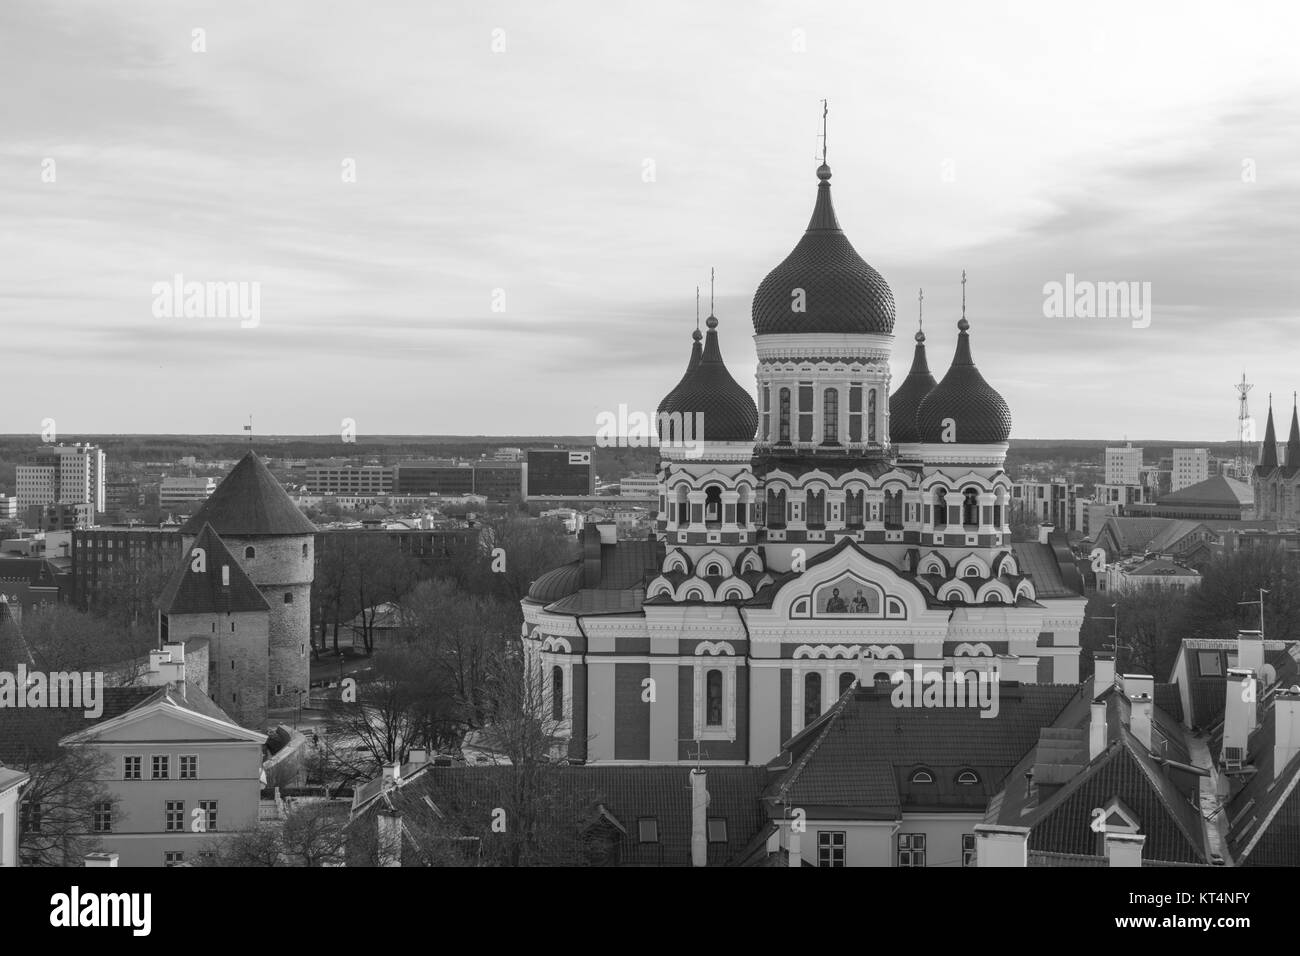 Vista del paisaje urbano en el casco antiguo, con la catedral Alexander Nevsky en Tallinn, Estonia (blanco y negro) Foto de stock